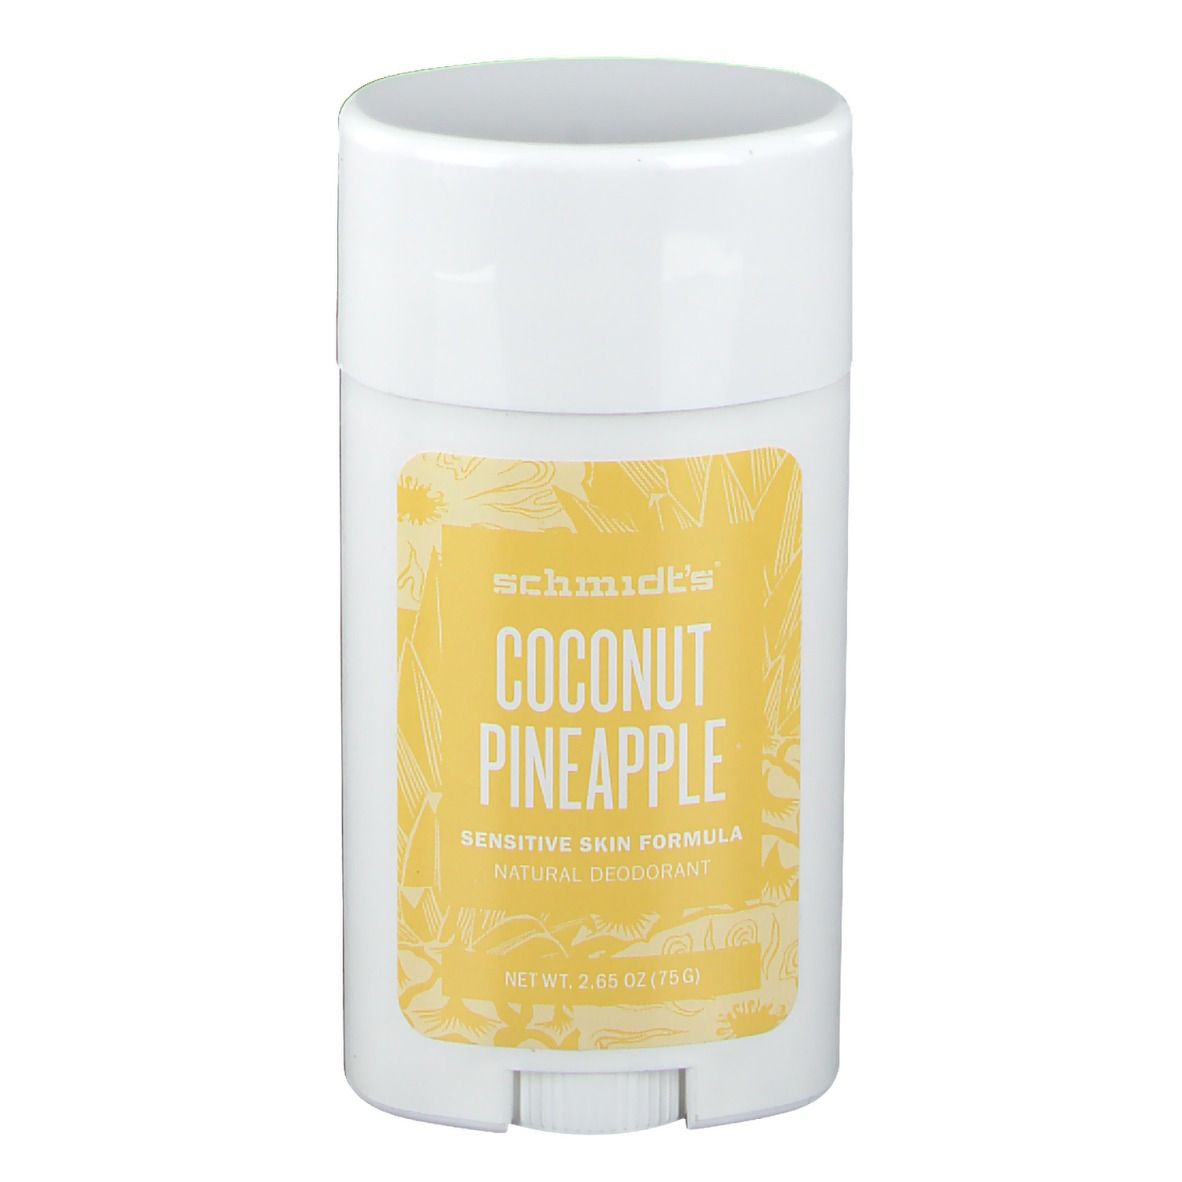 schmidts Coconut Pineapple Deodorant